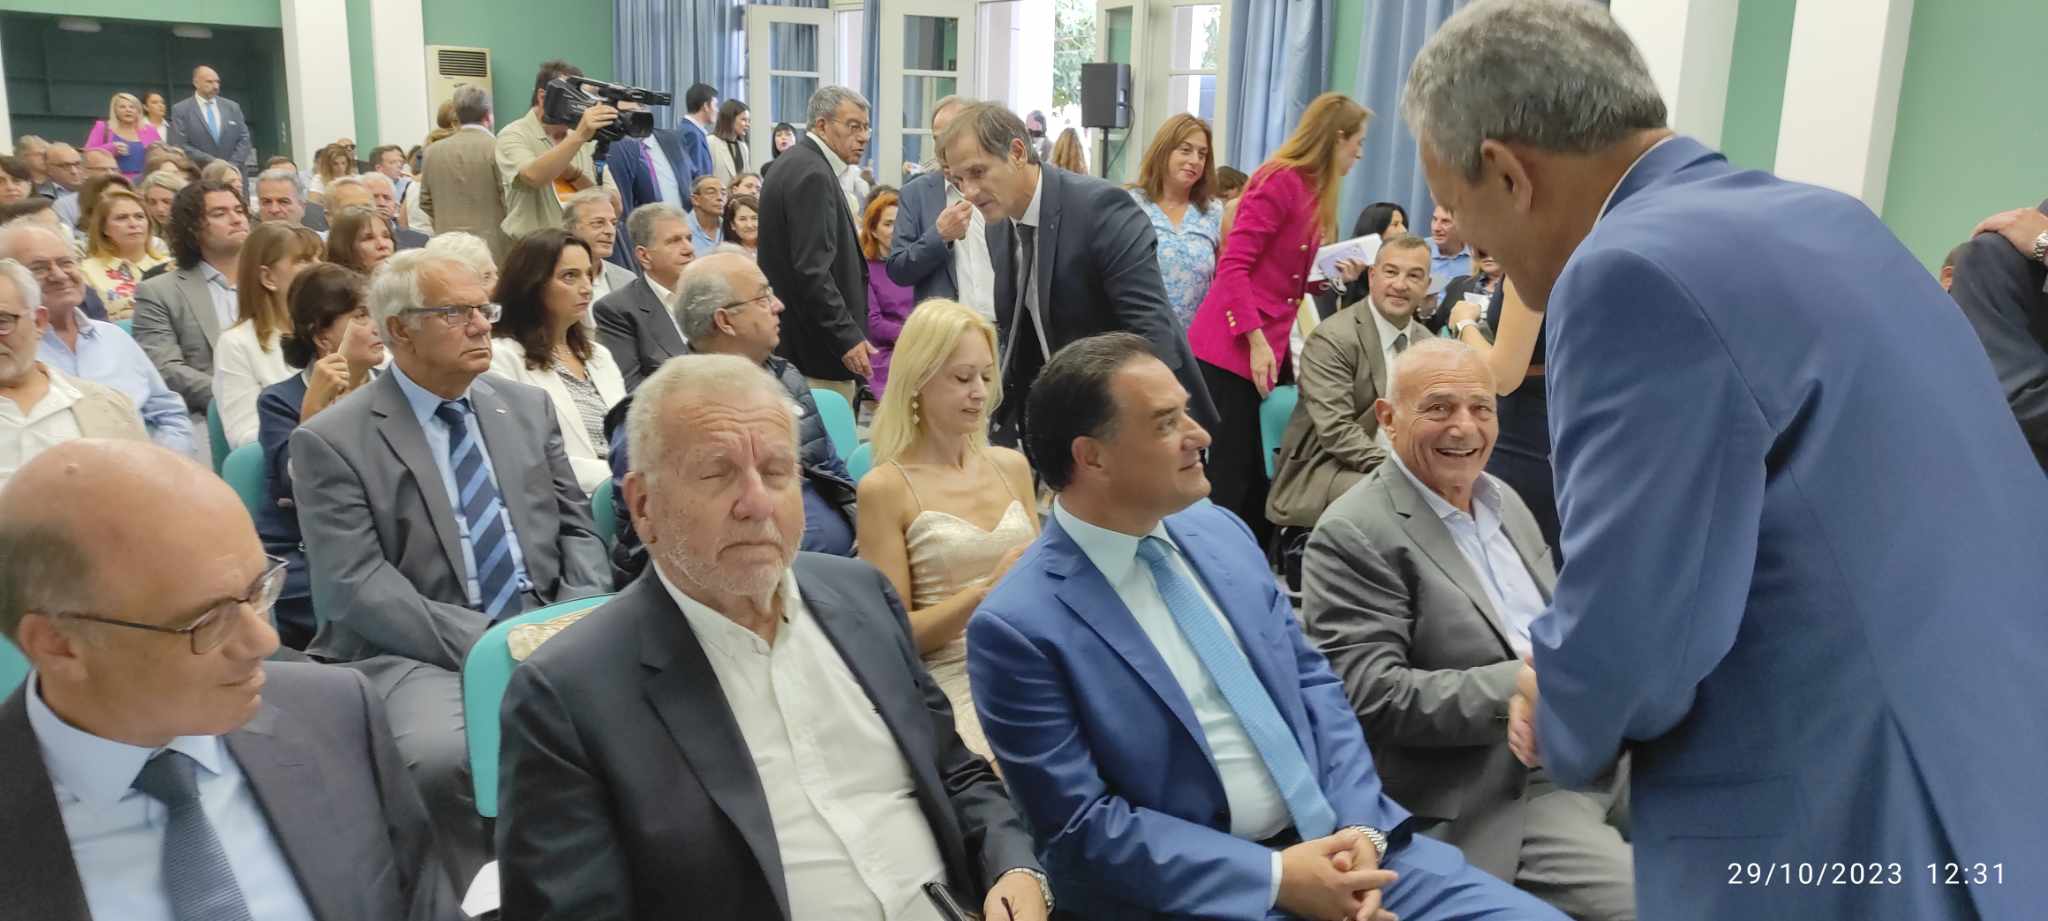 Στην Σάμο για τα εγκαίνια της Πυθαγορείου Ακαδημίας ο Υπουργός Εργασίας Άδωνις Γεωργιάδης